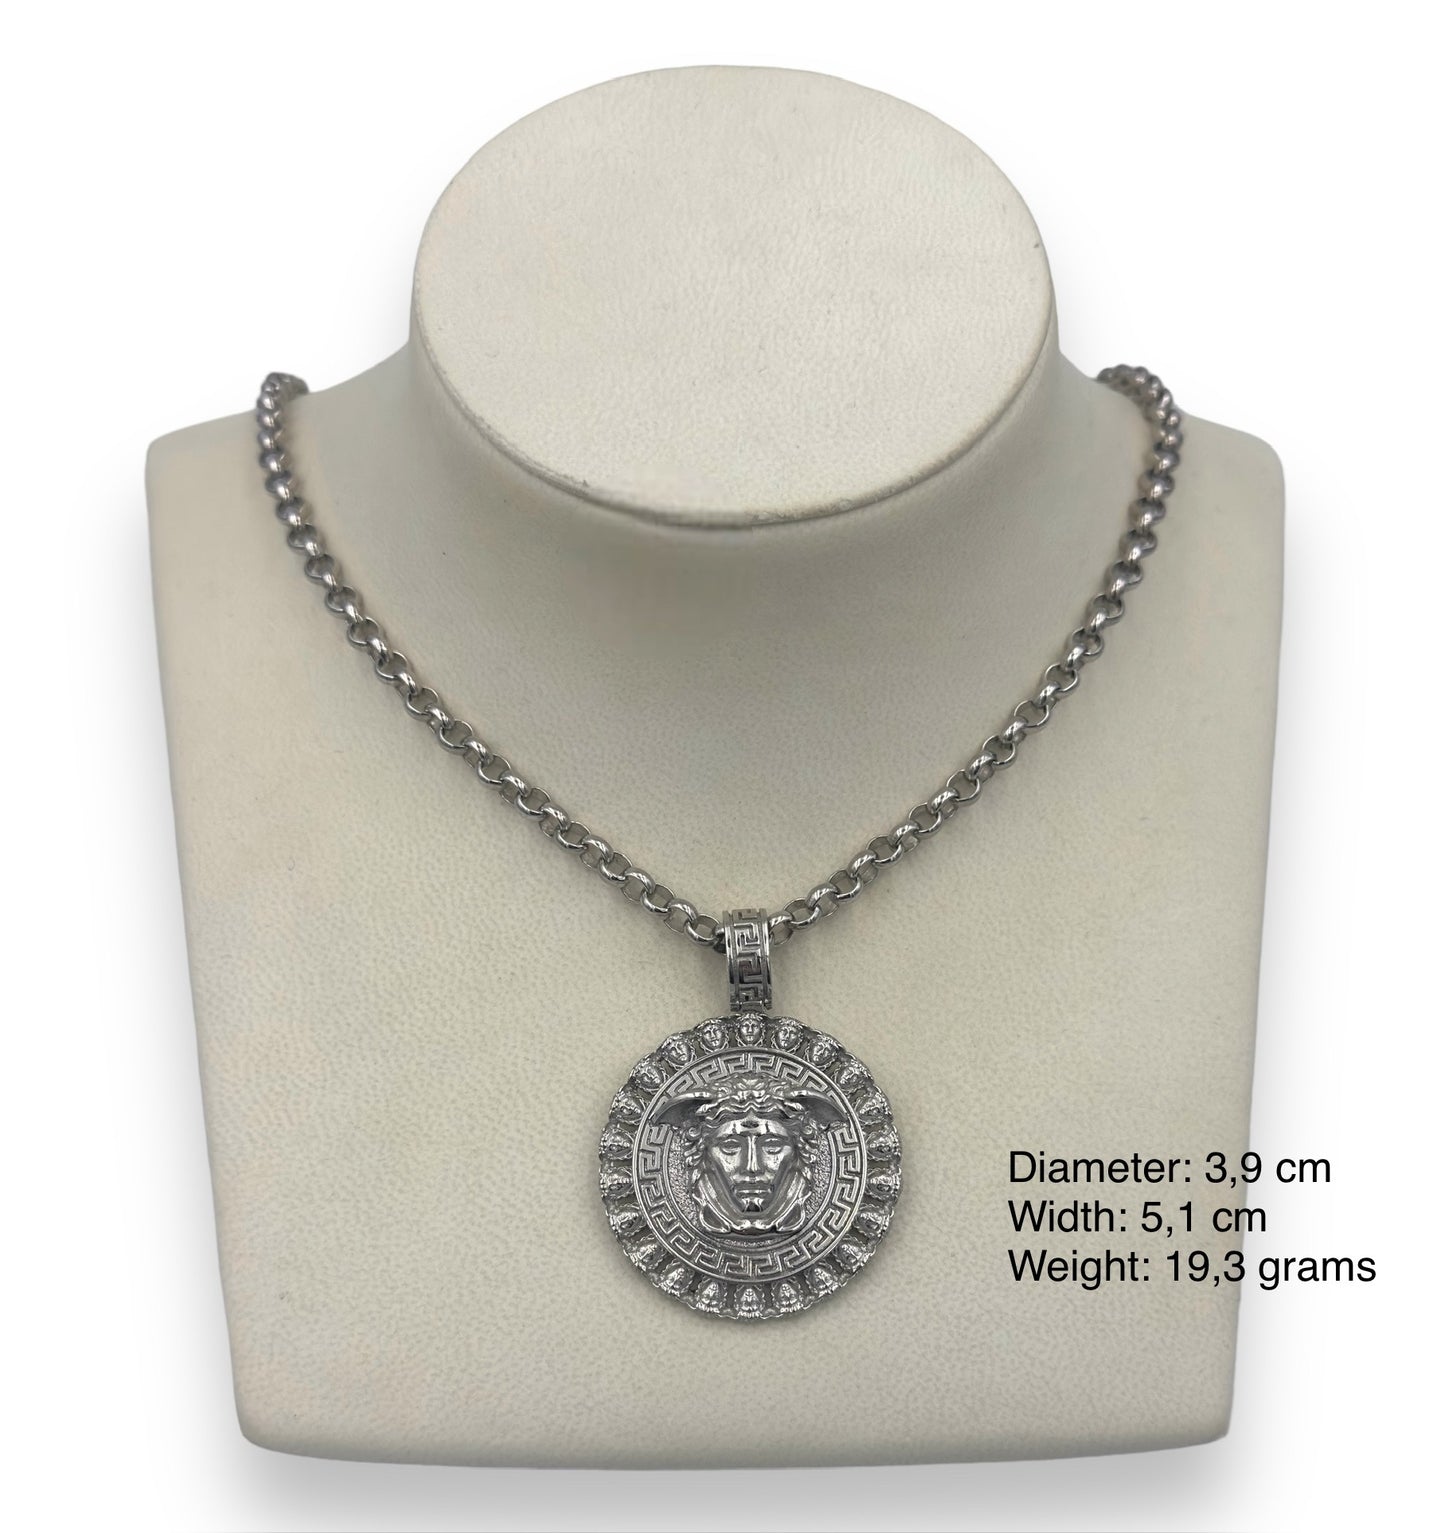 Silver Medusa and Meander design pendant